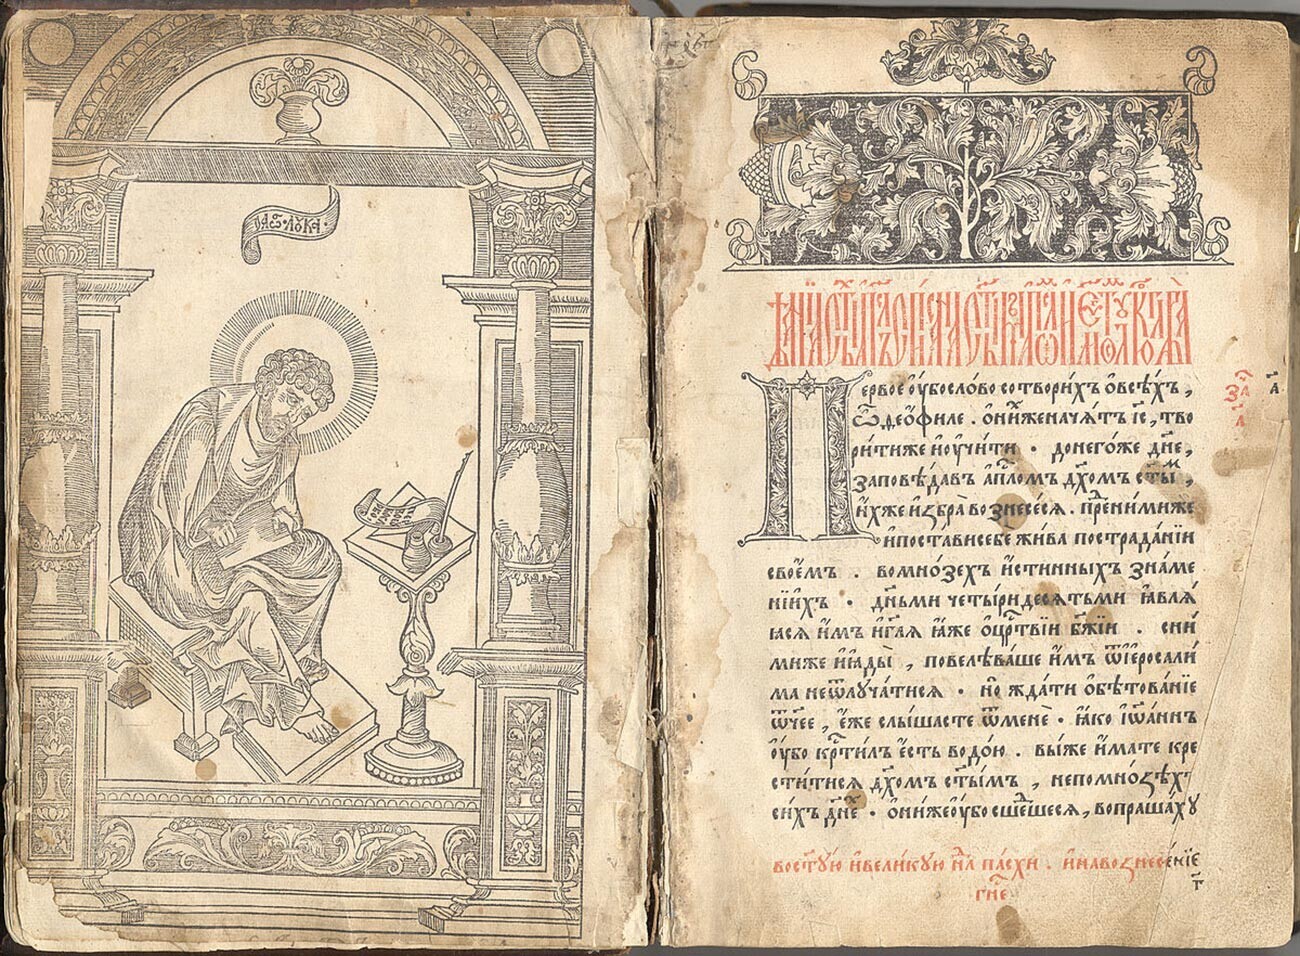 Halaman depan buku Rusia pertama yang pernah dicetak, Apostolos tahun 1564.